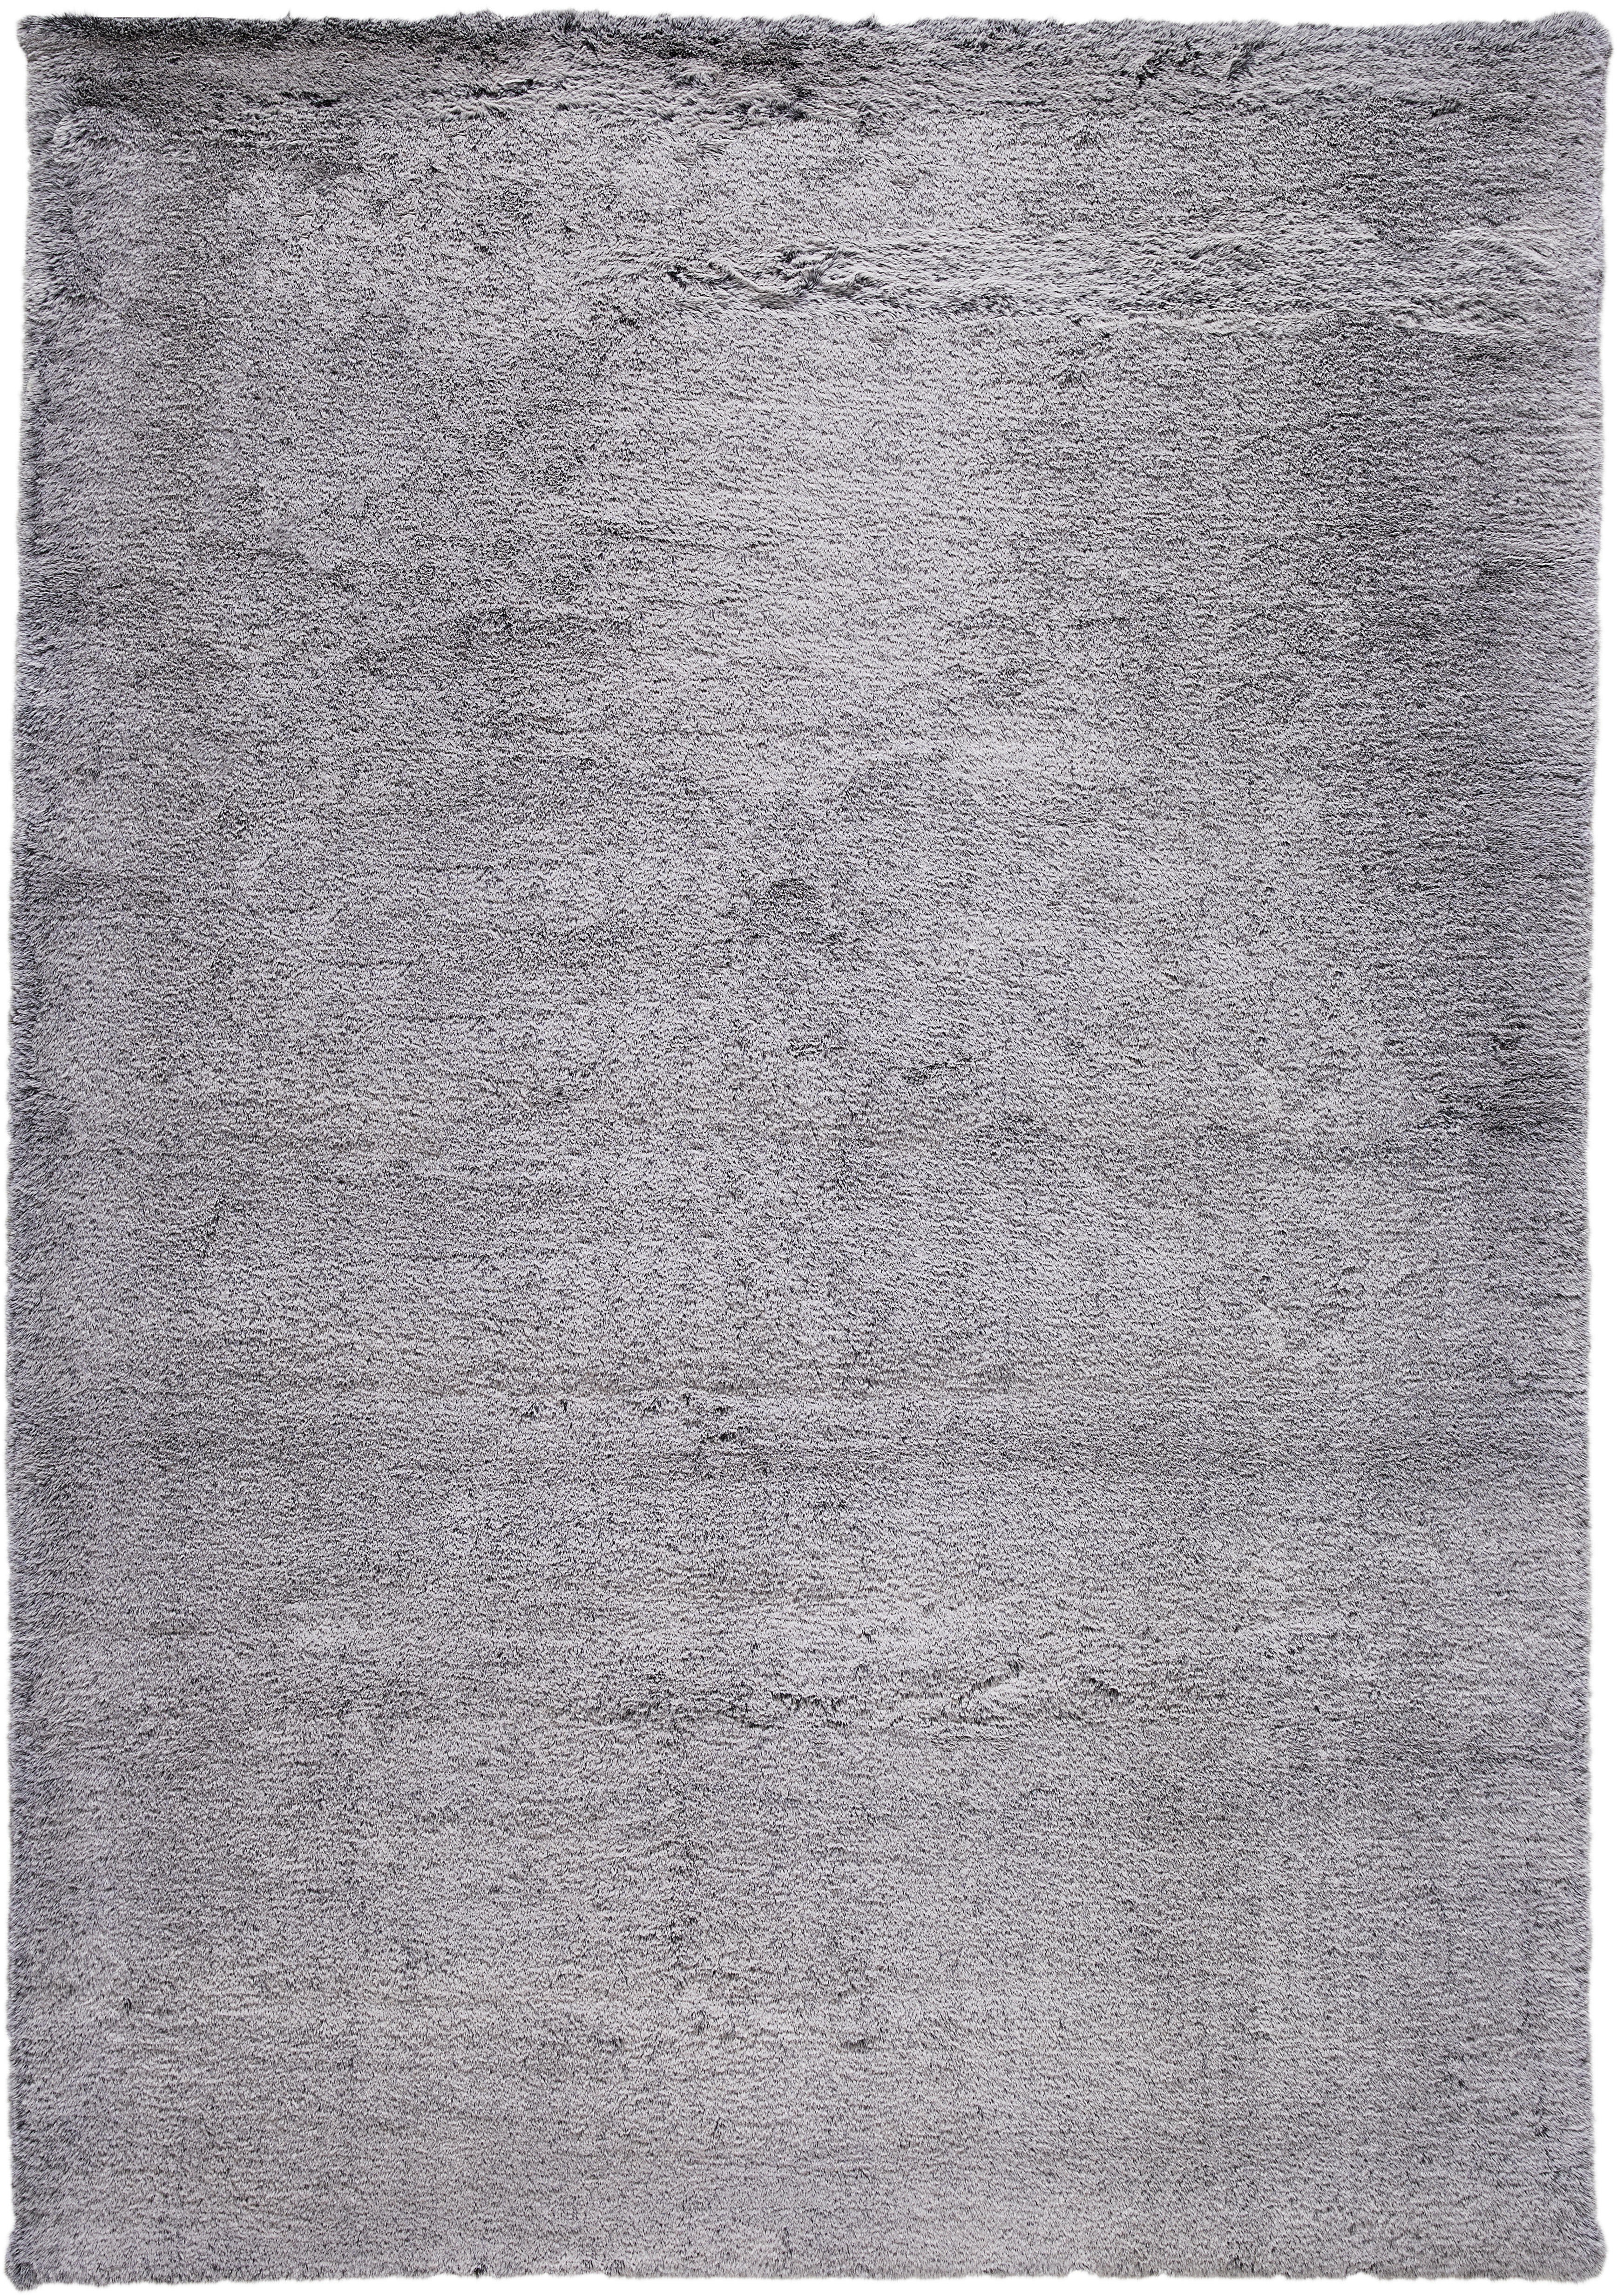 HOCHFLORTEPPICH 160/230 cm Tenei  - Silberfarben, Design, Textil (160/230cm) - Novel